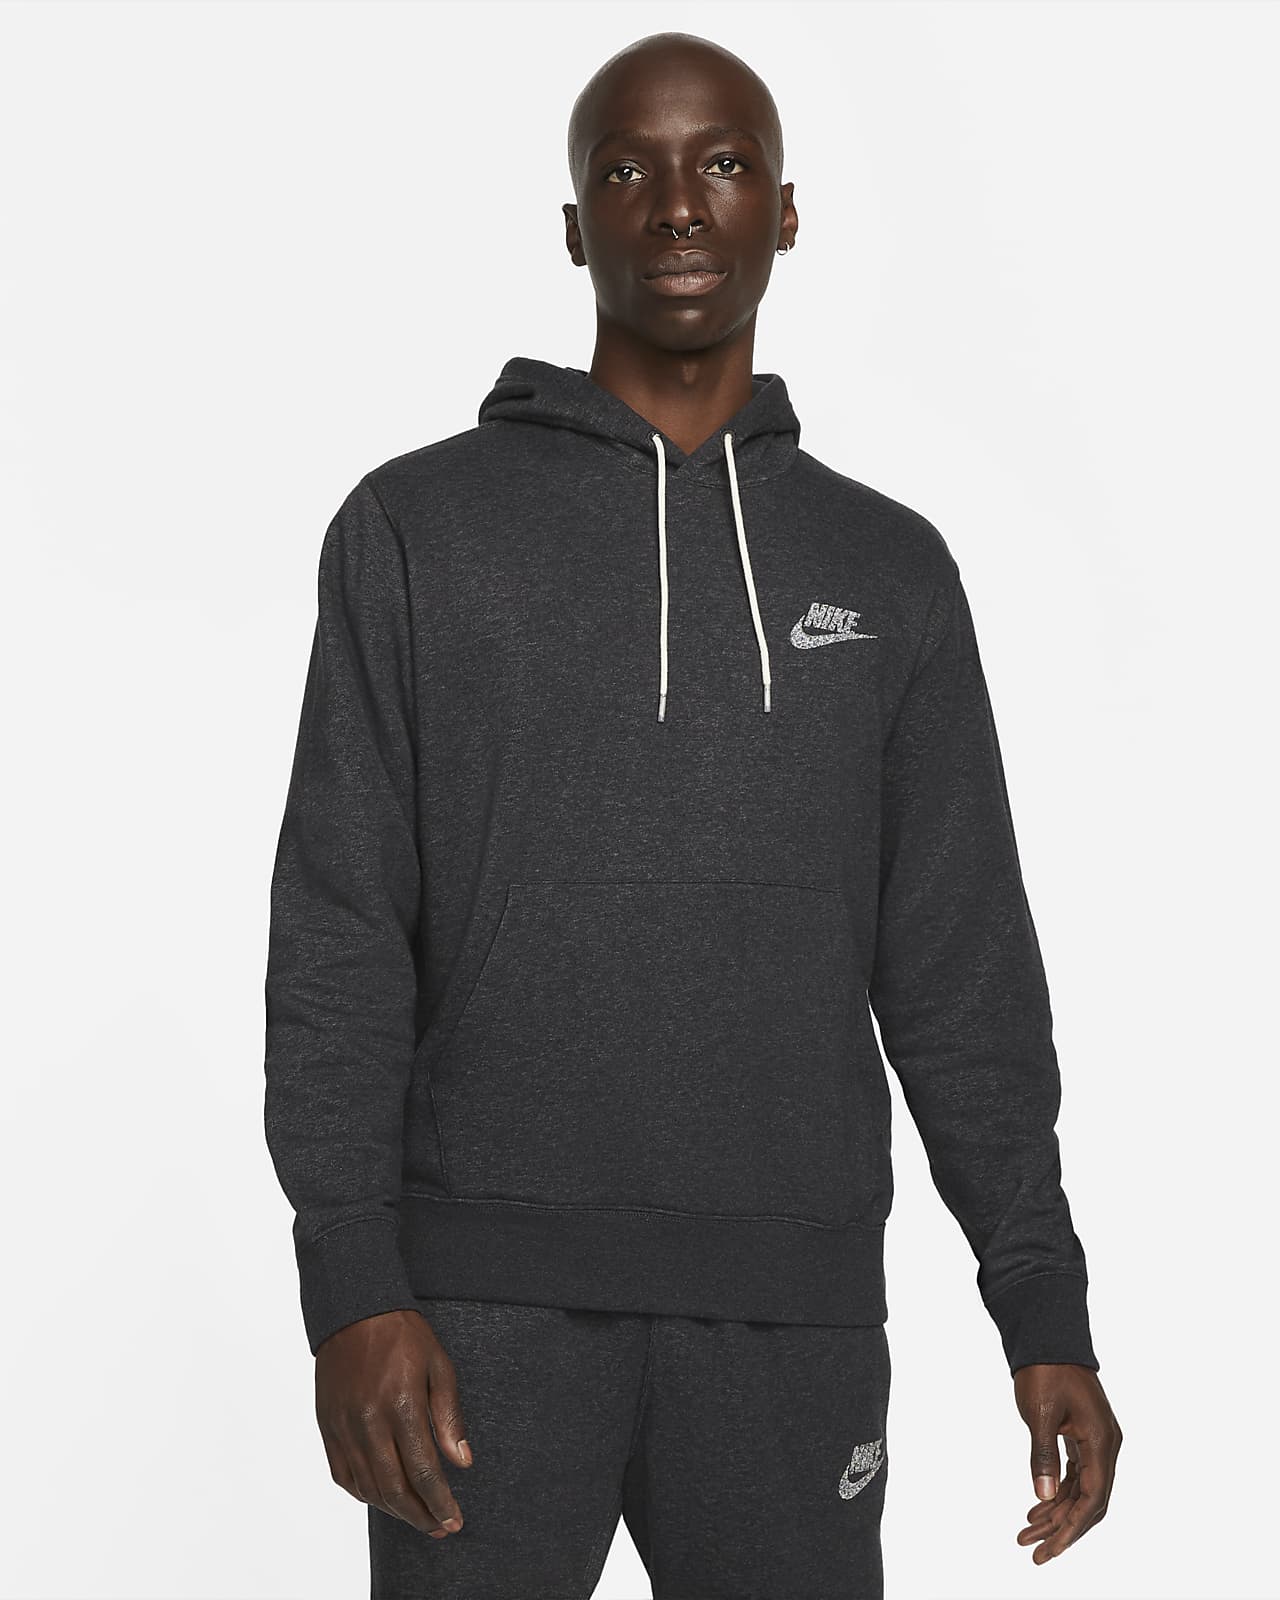 Aanpassing stikstof fundament Nike Sportswear Men's Fleece Pullover Hoodie. Nike.com